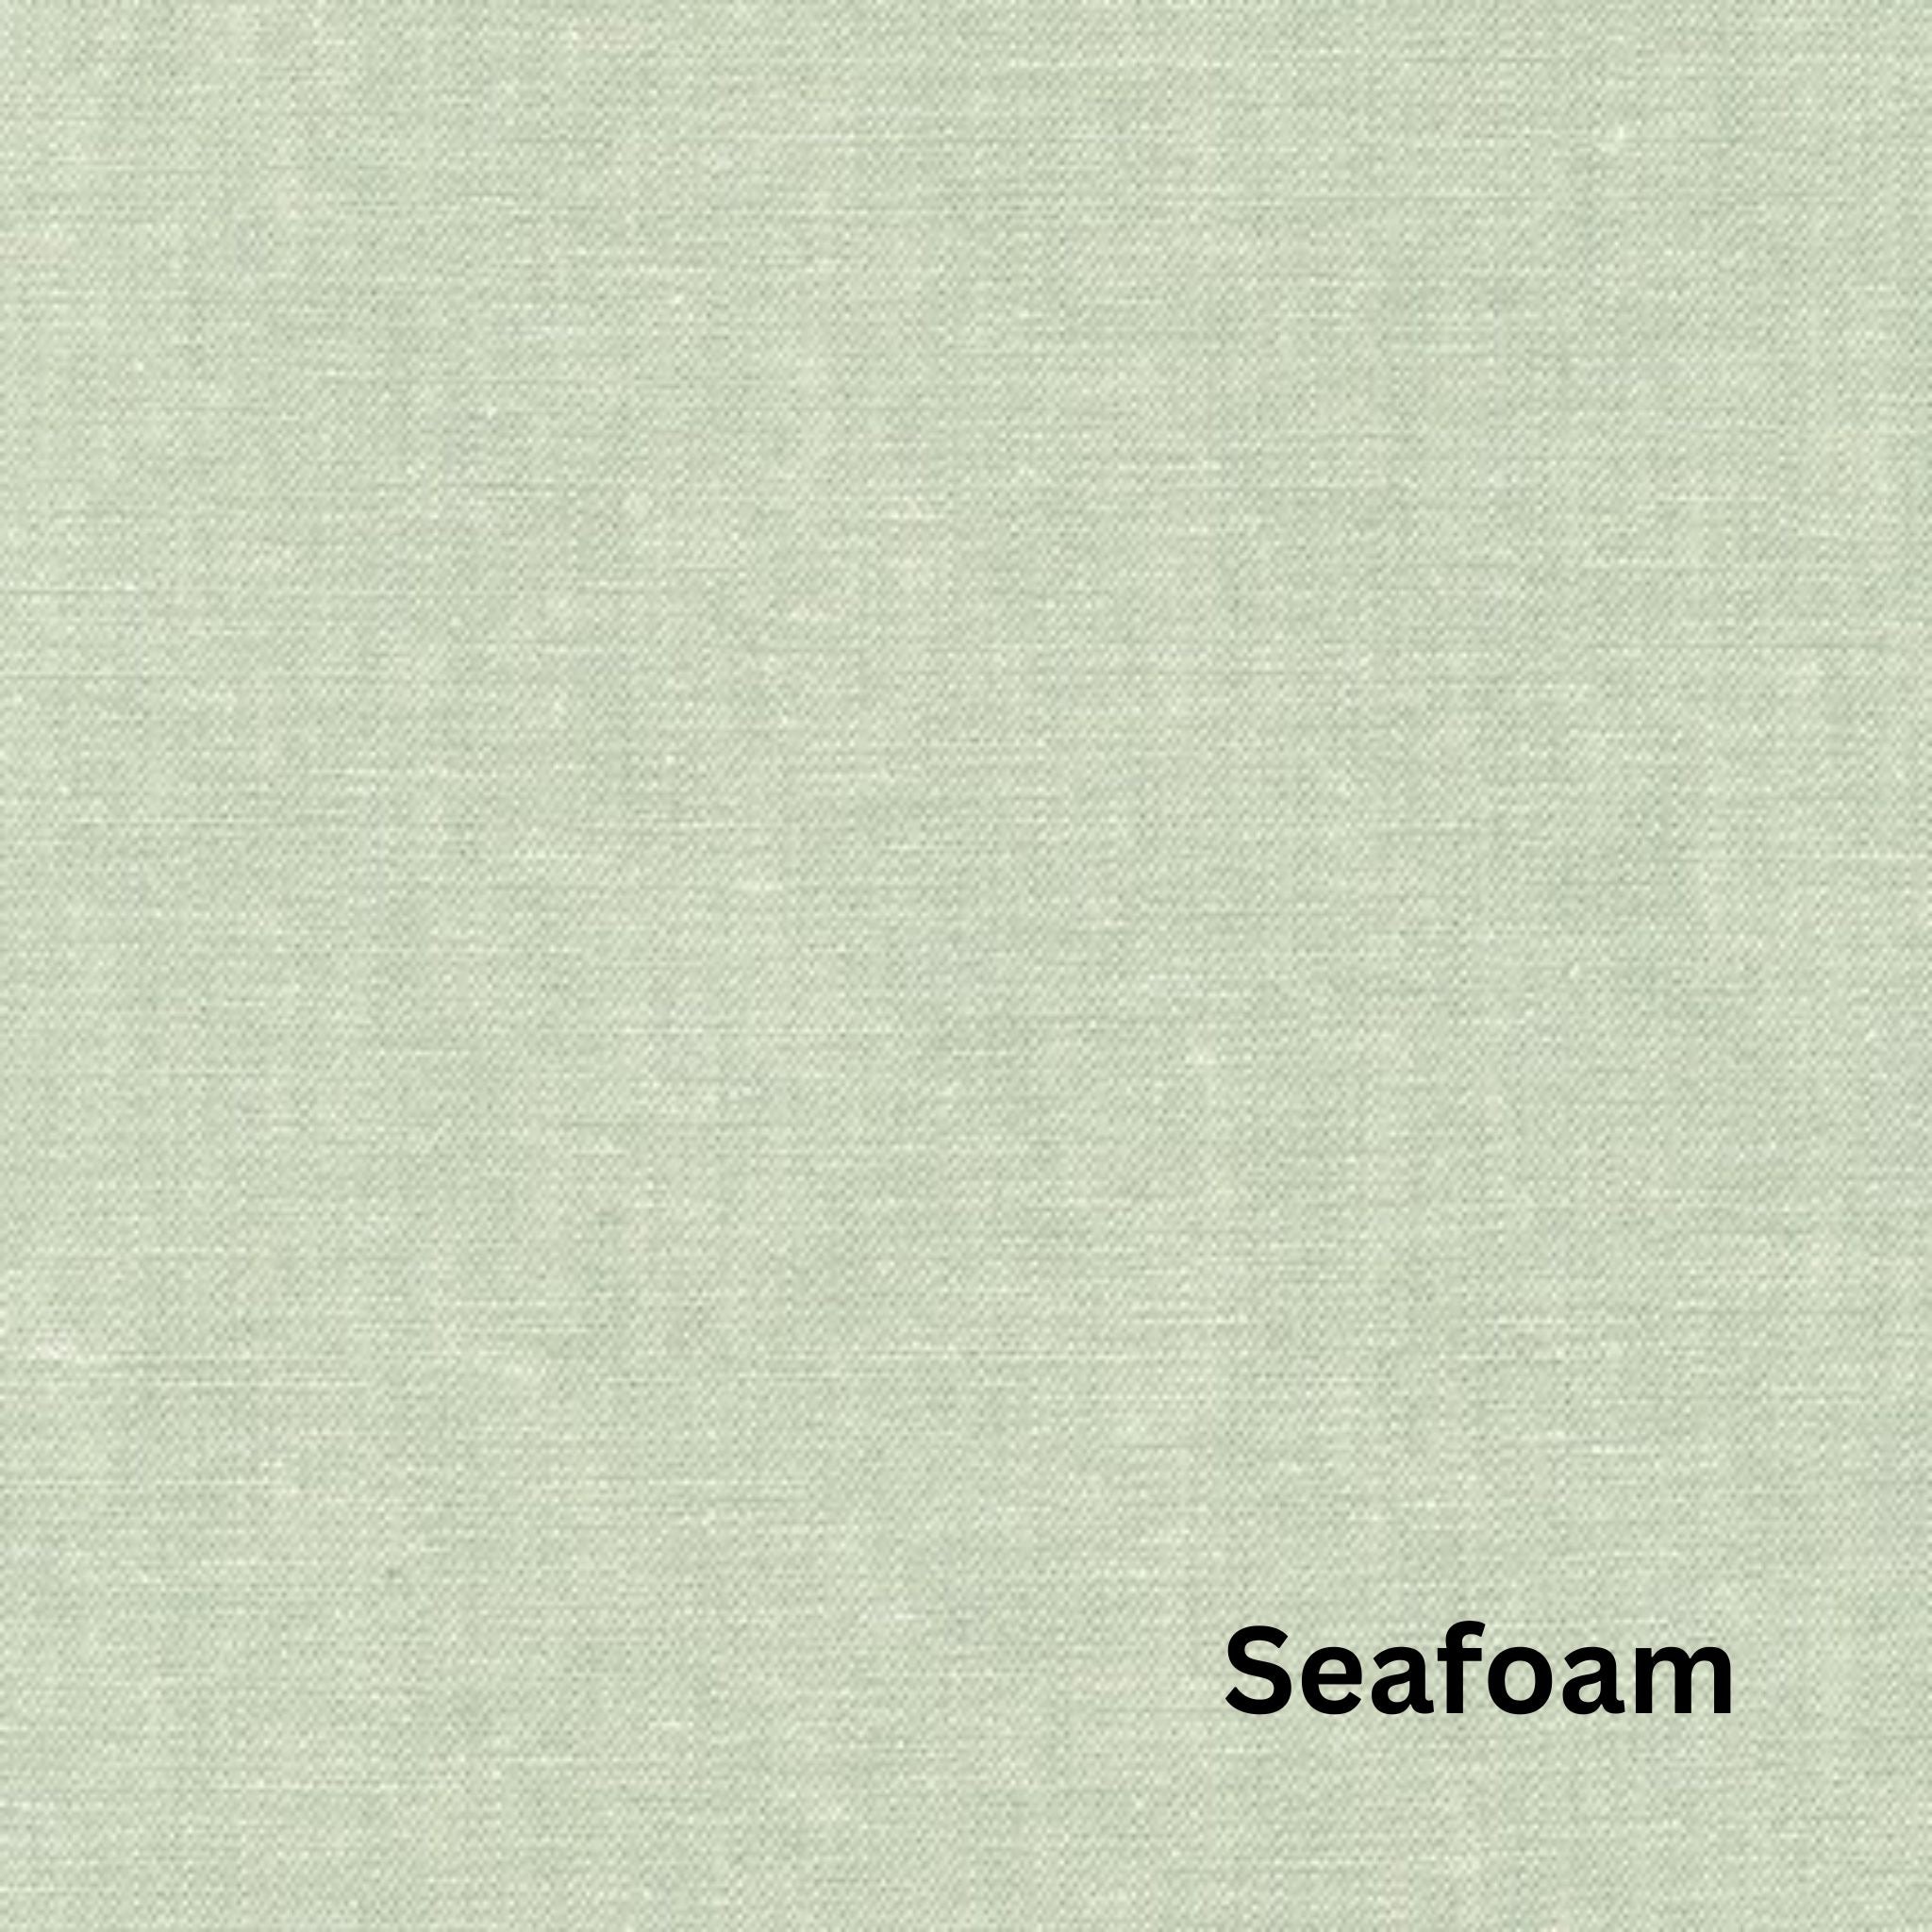 essex dyed yarn linen mix seafoam - Robert Kaufman